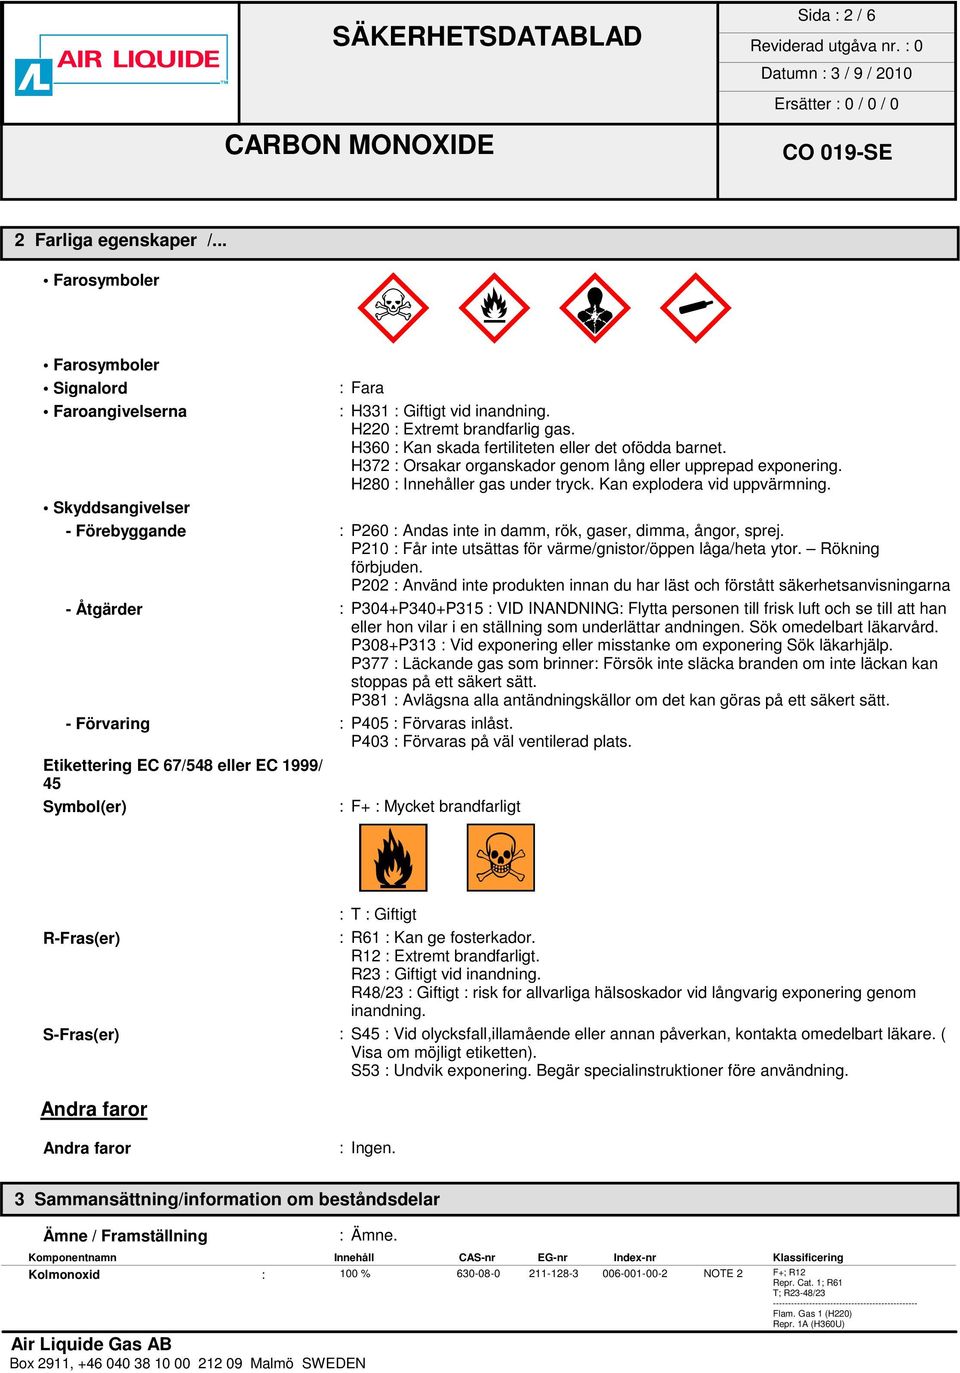 Skyddsangivelser - Förebyggande : P260 : Andas inte in damm, rök, gaser, dimma, ångor, sprej. P210 : Får inte utsättas för värme/gnistor/öppen låga/heta ytor. Rökning förbjuden.